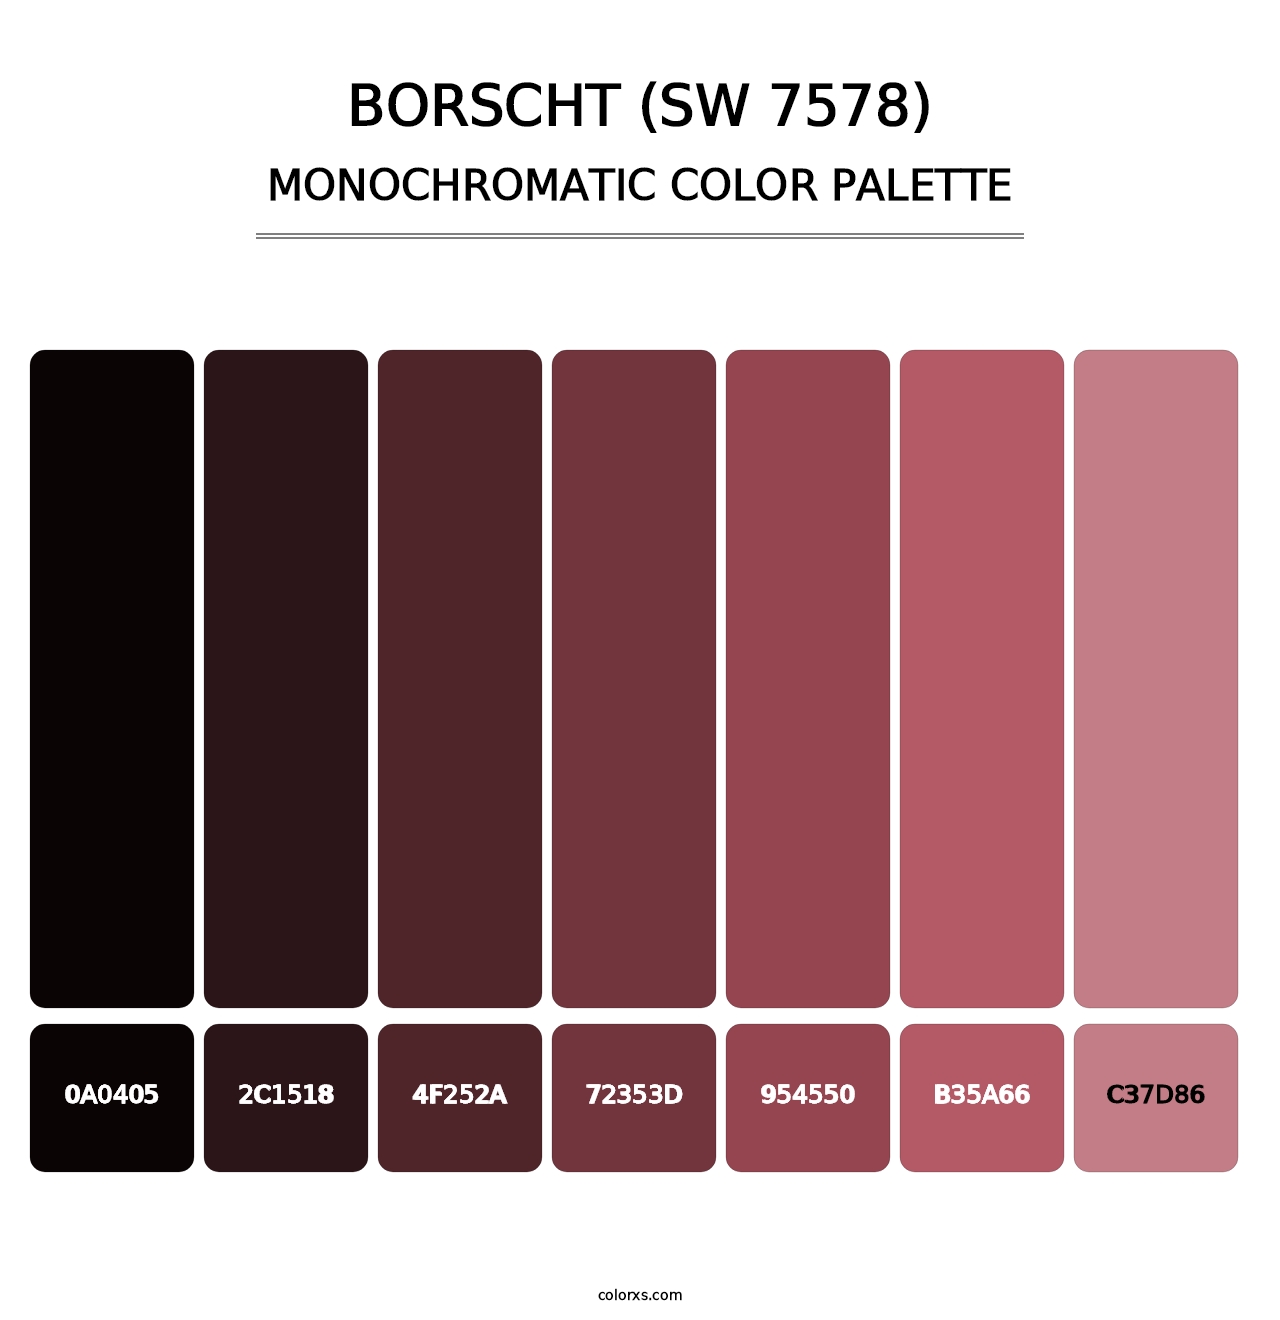 Borscht (SW 7578) - Monochromatic Color Palette